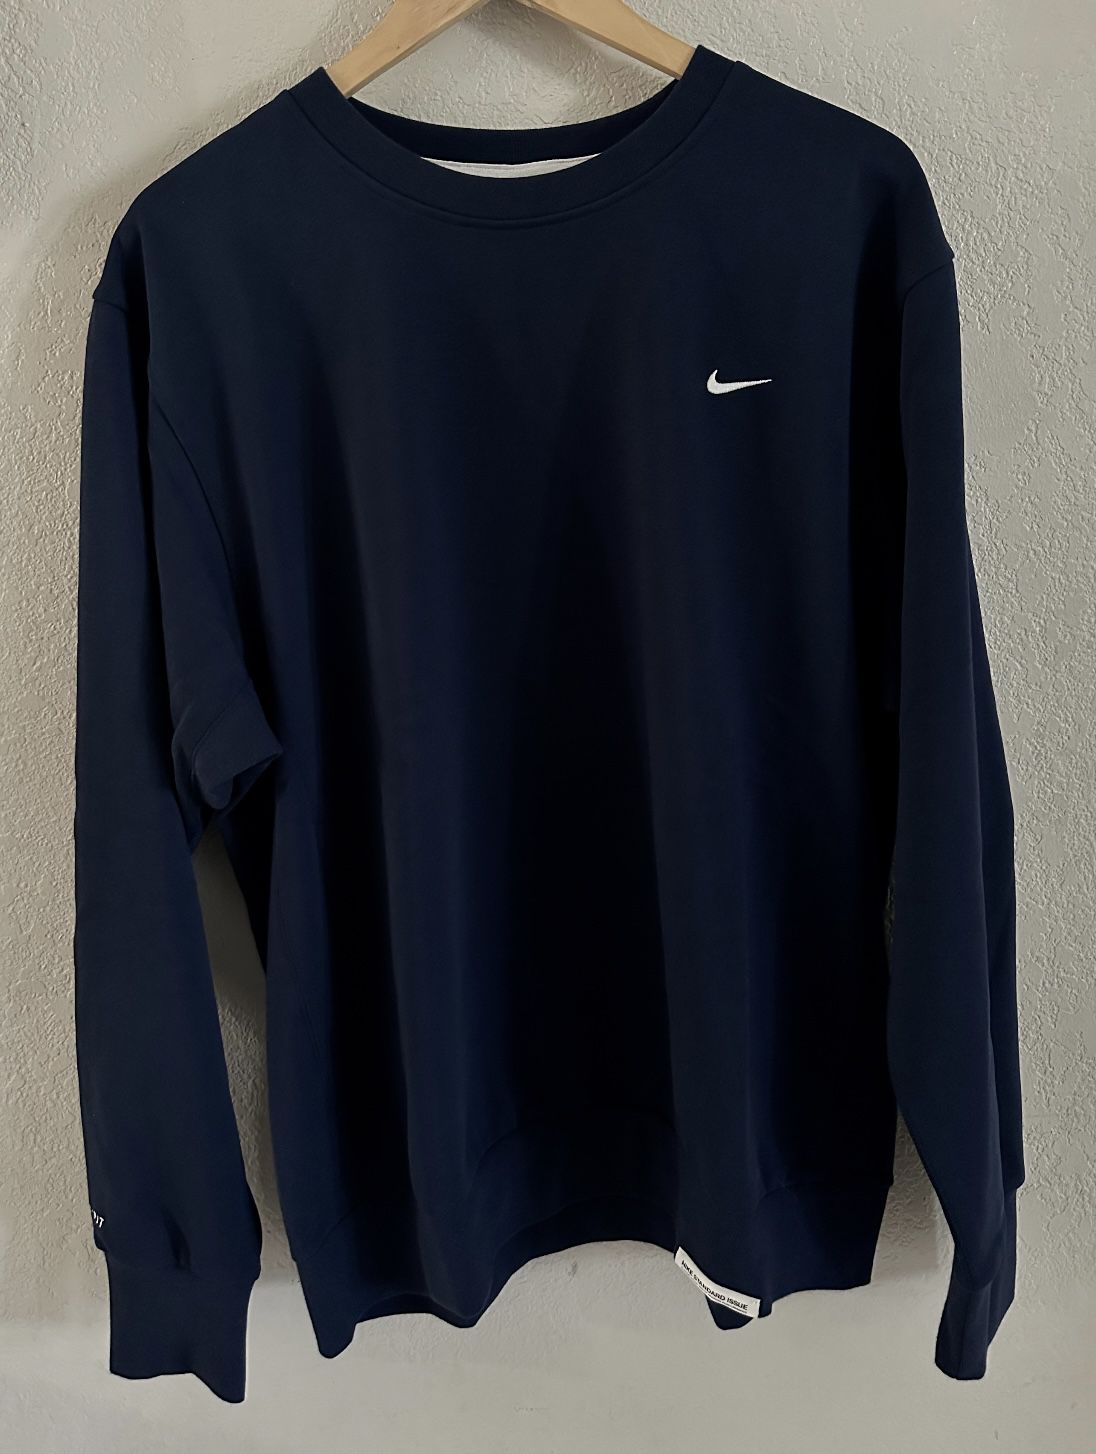 Nike sweatshirt men’s size Large 